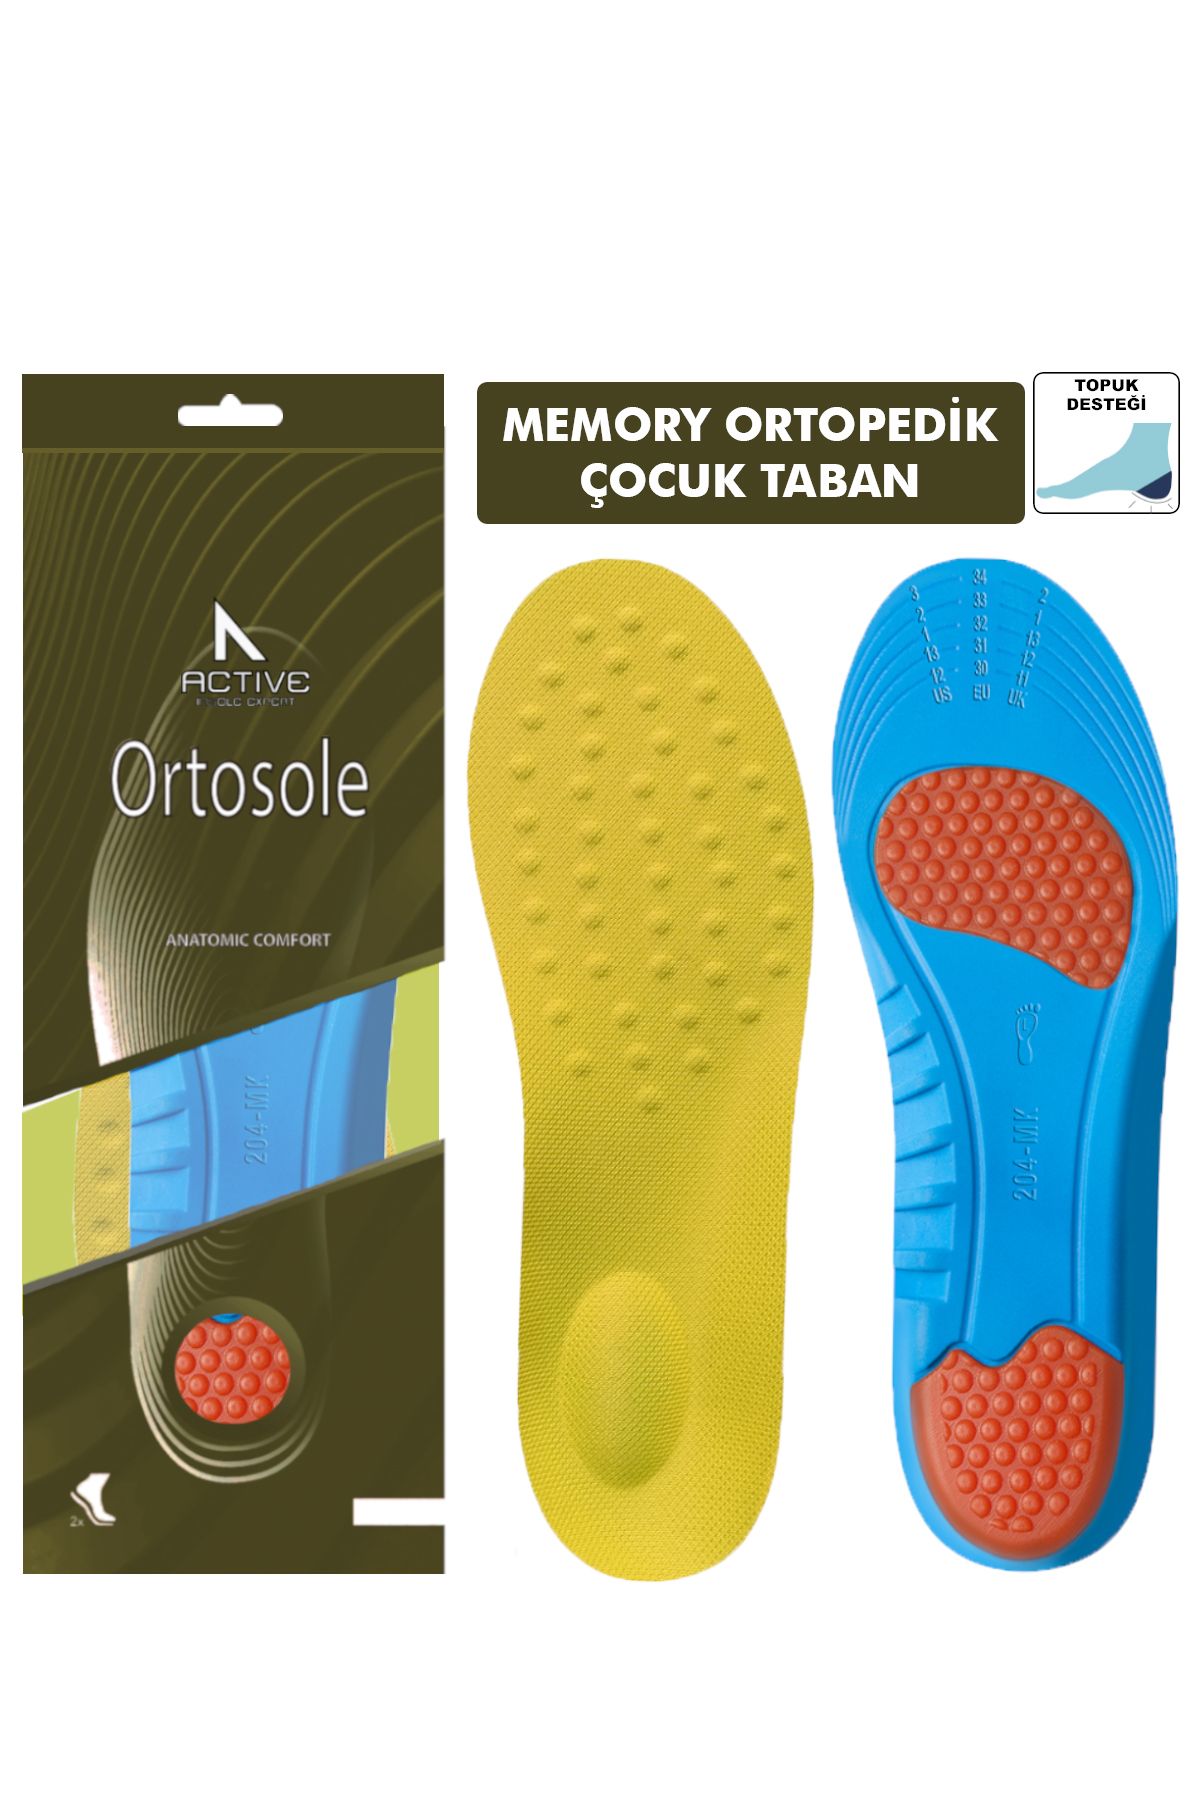 Ortosole Ortopedik Memory Foam Ayakkabı Tabanlığı, Natural Kemer Destekli Tabanlık - Çocuk